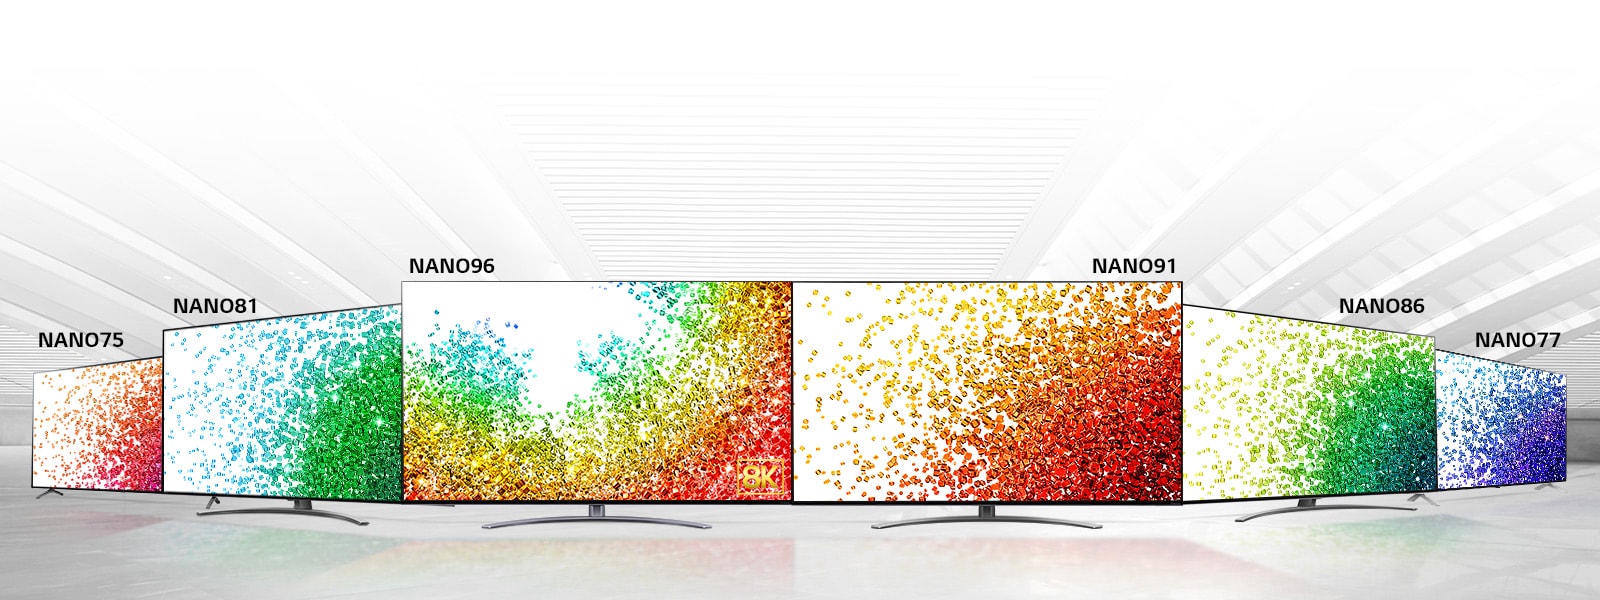 Зображення телевізора LG з технологією NanoCell на сірому фоні та кольорової абстракції на екрані, що віддзеркалюється на поверхні перед телевізором.